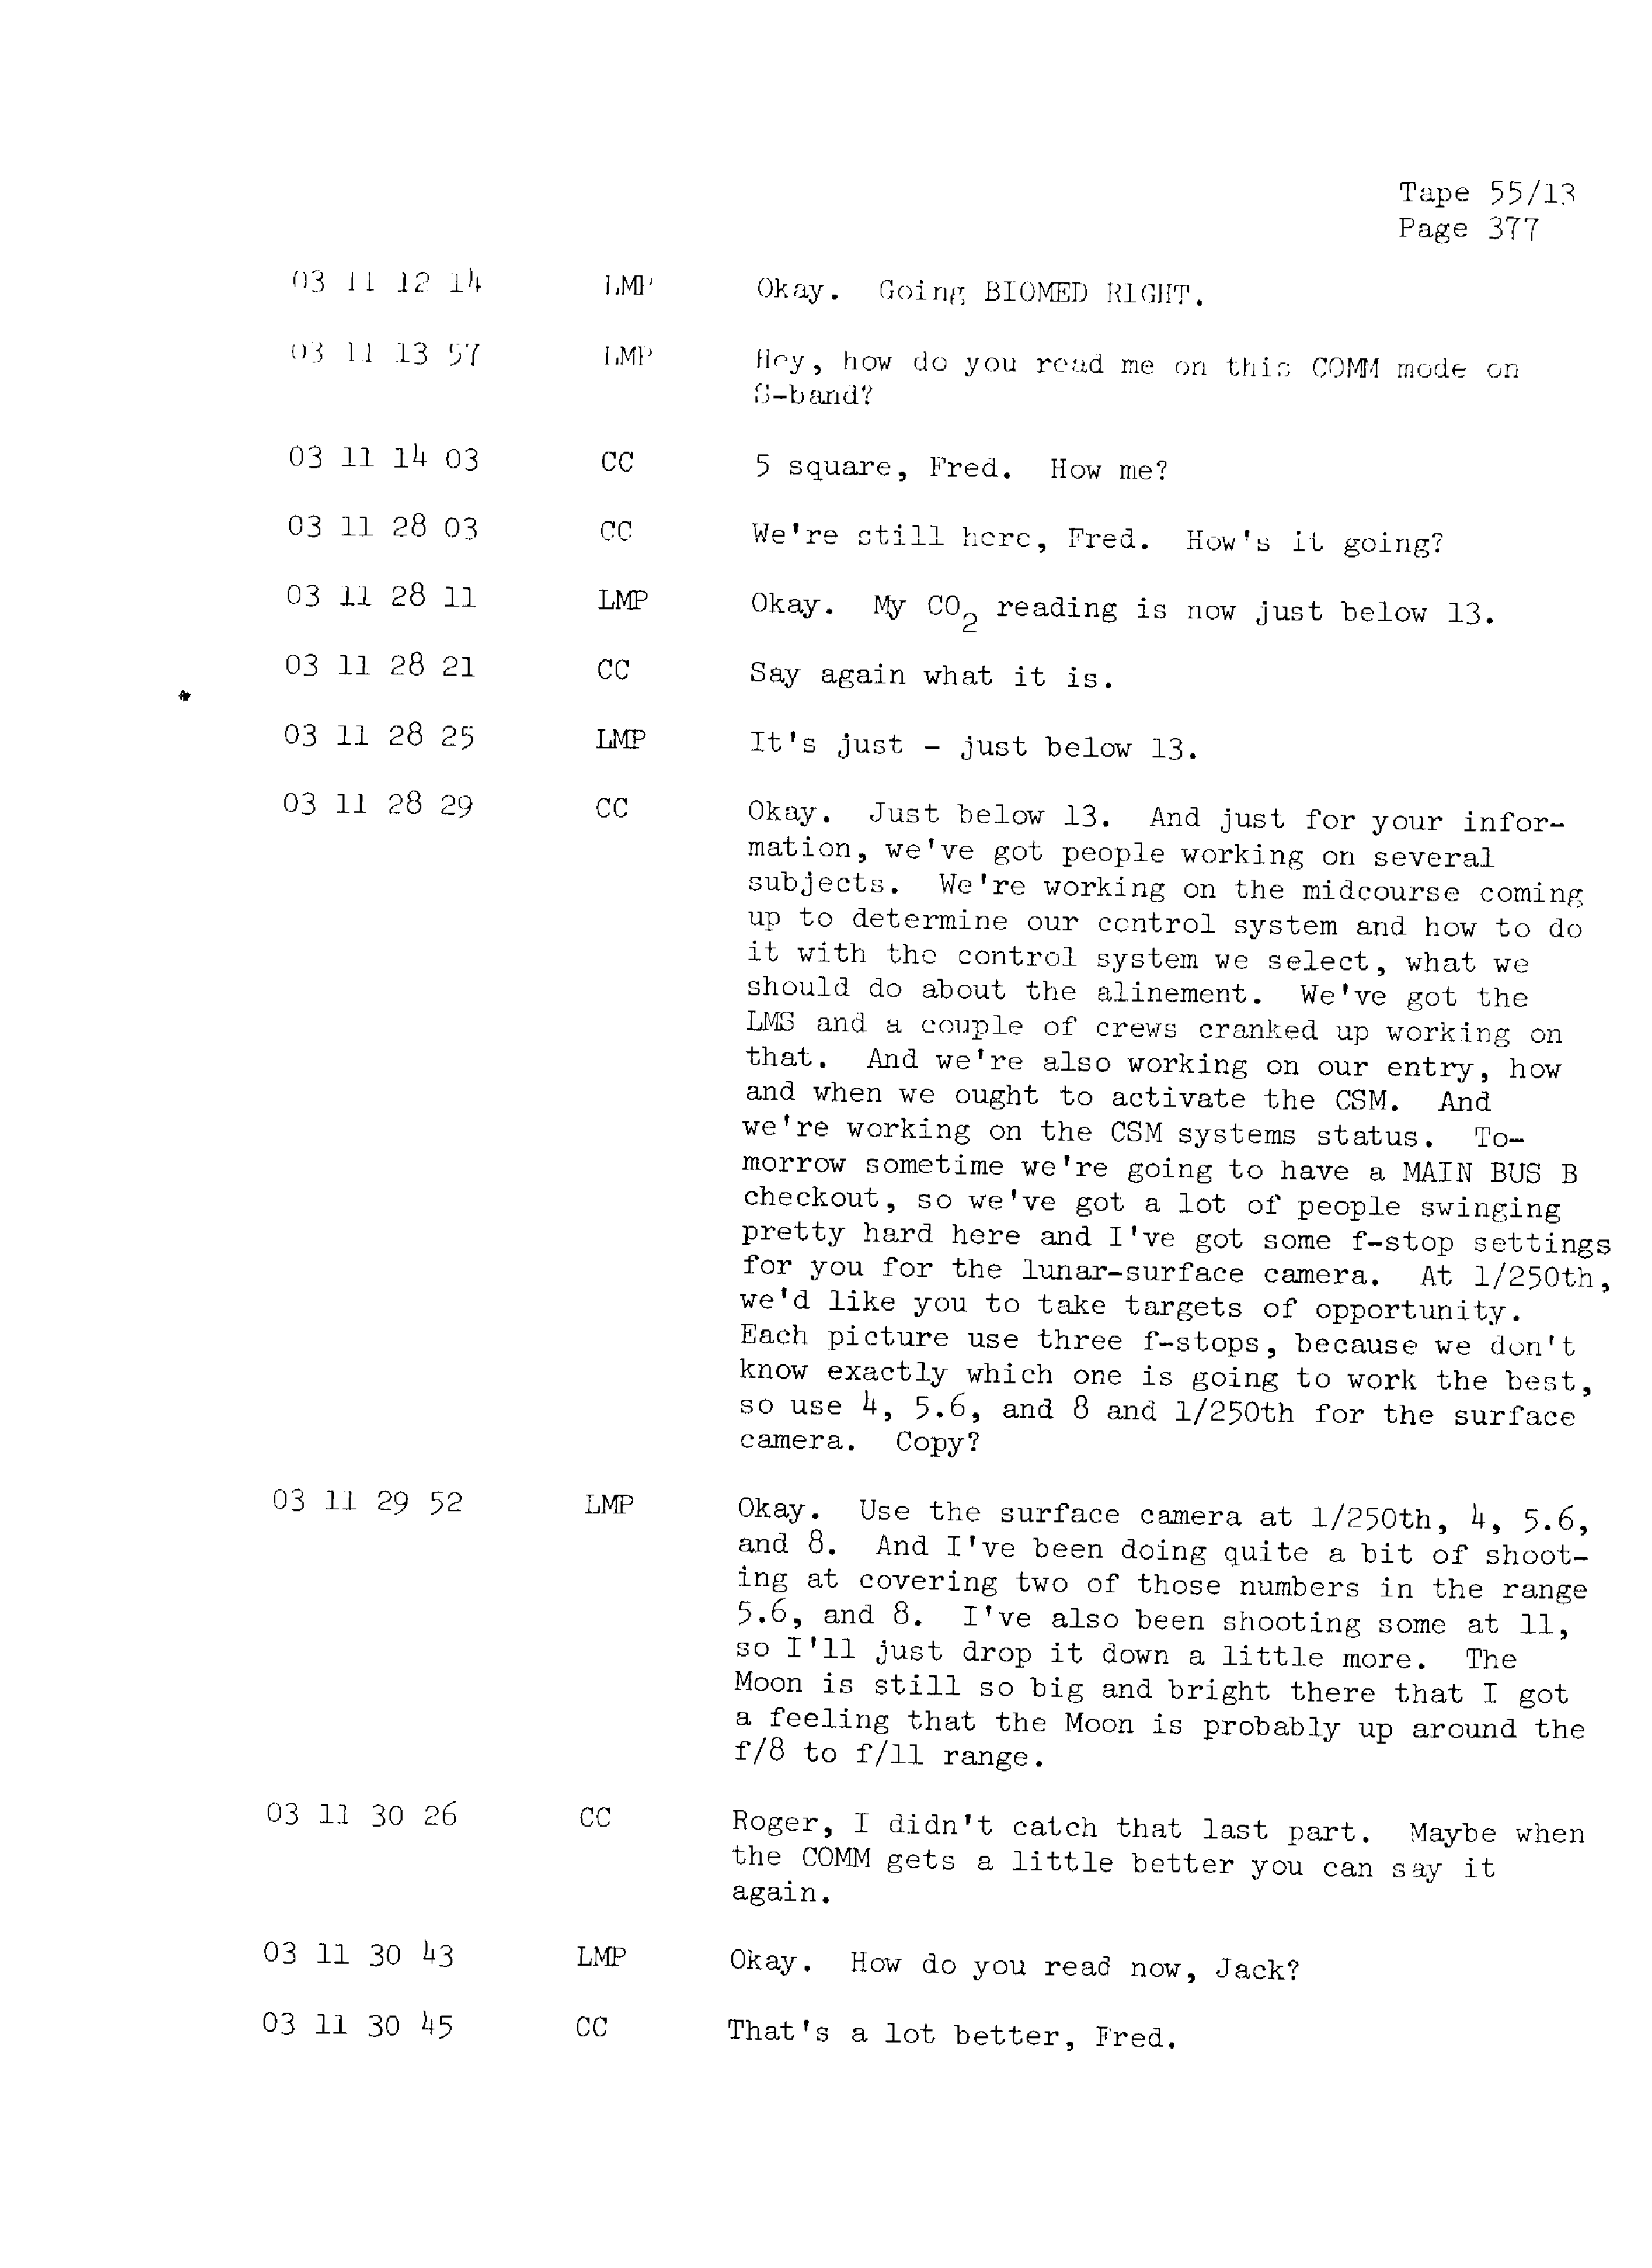 Page 384 of Apollo 13’s original transcript